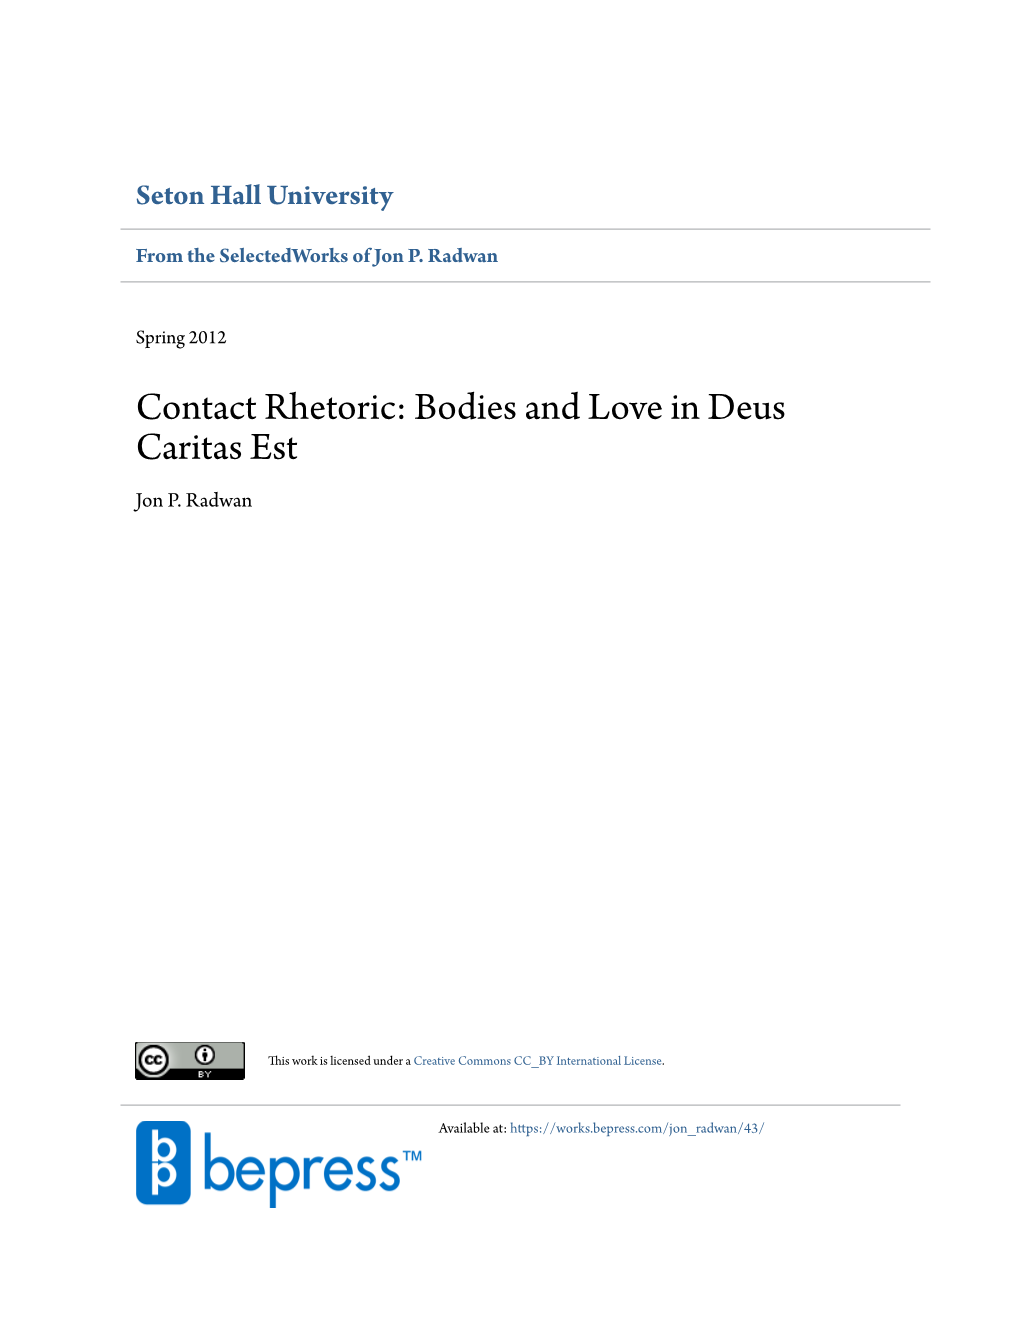 Contact Rhetoric: Bodies and Love in Deus Caritas Est Jon P